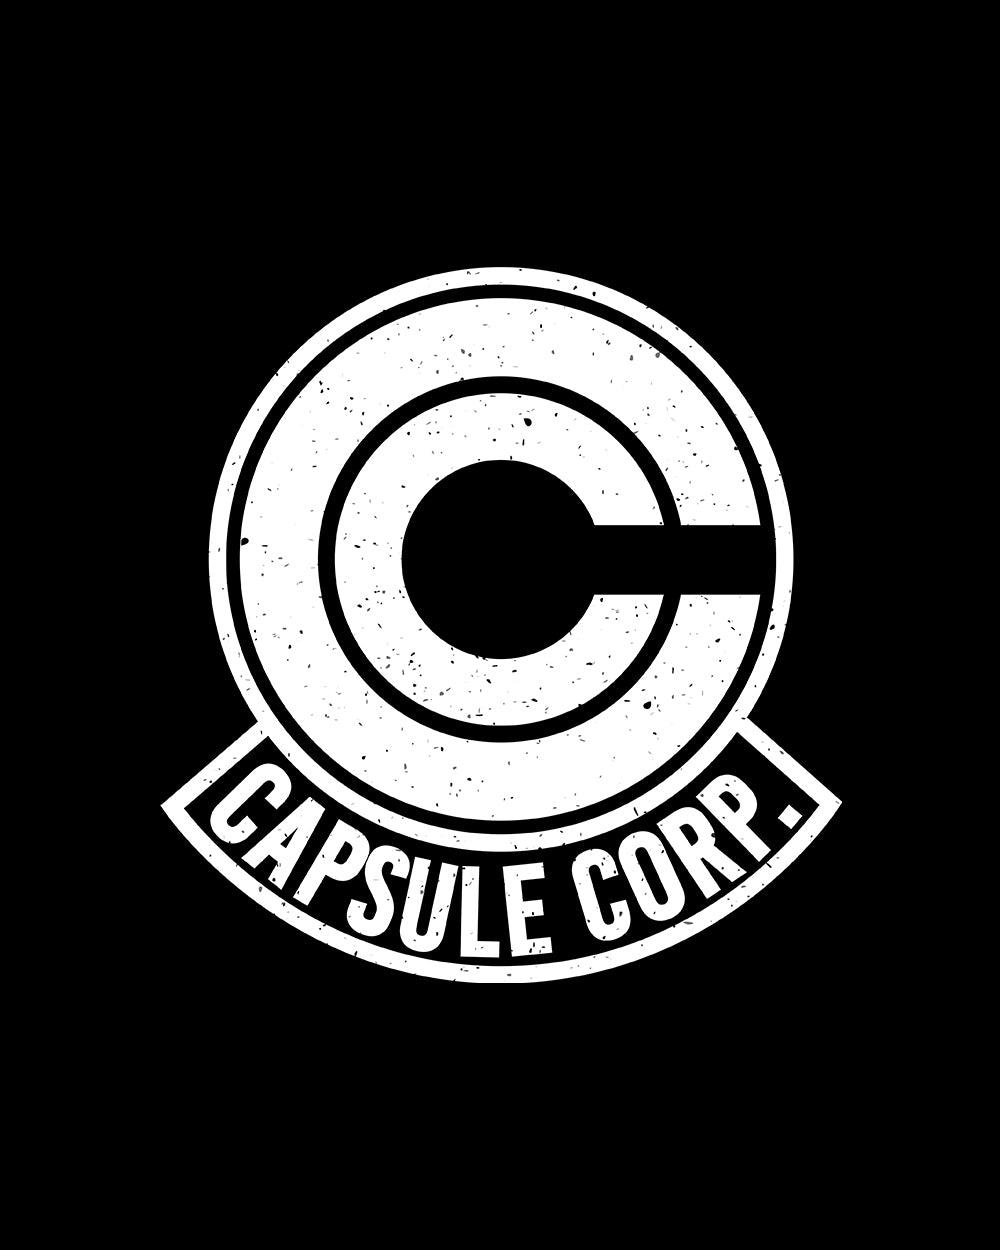 Capsule Corp Long Sleeve Australia Online #colour_black